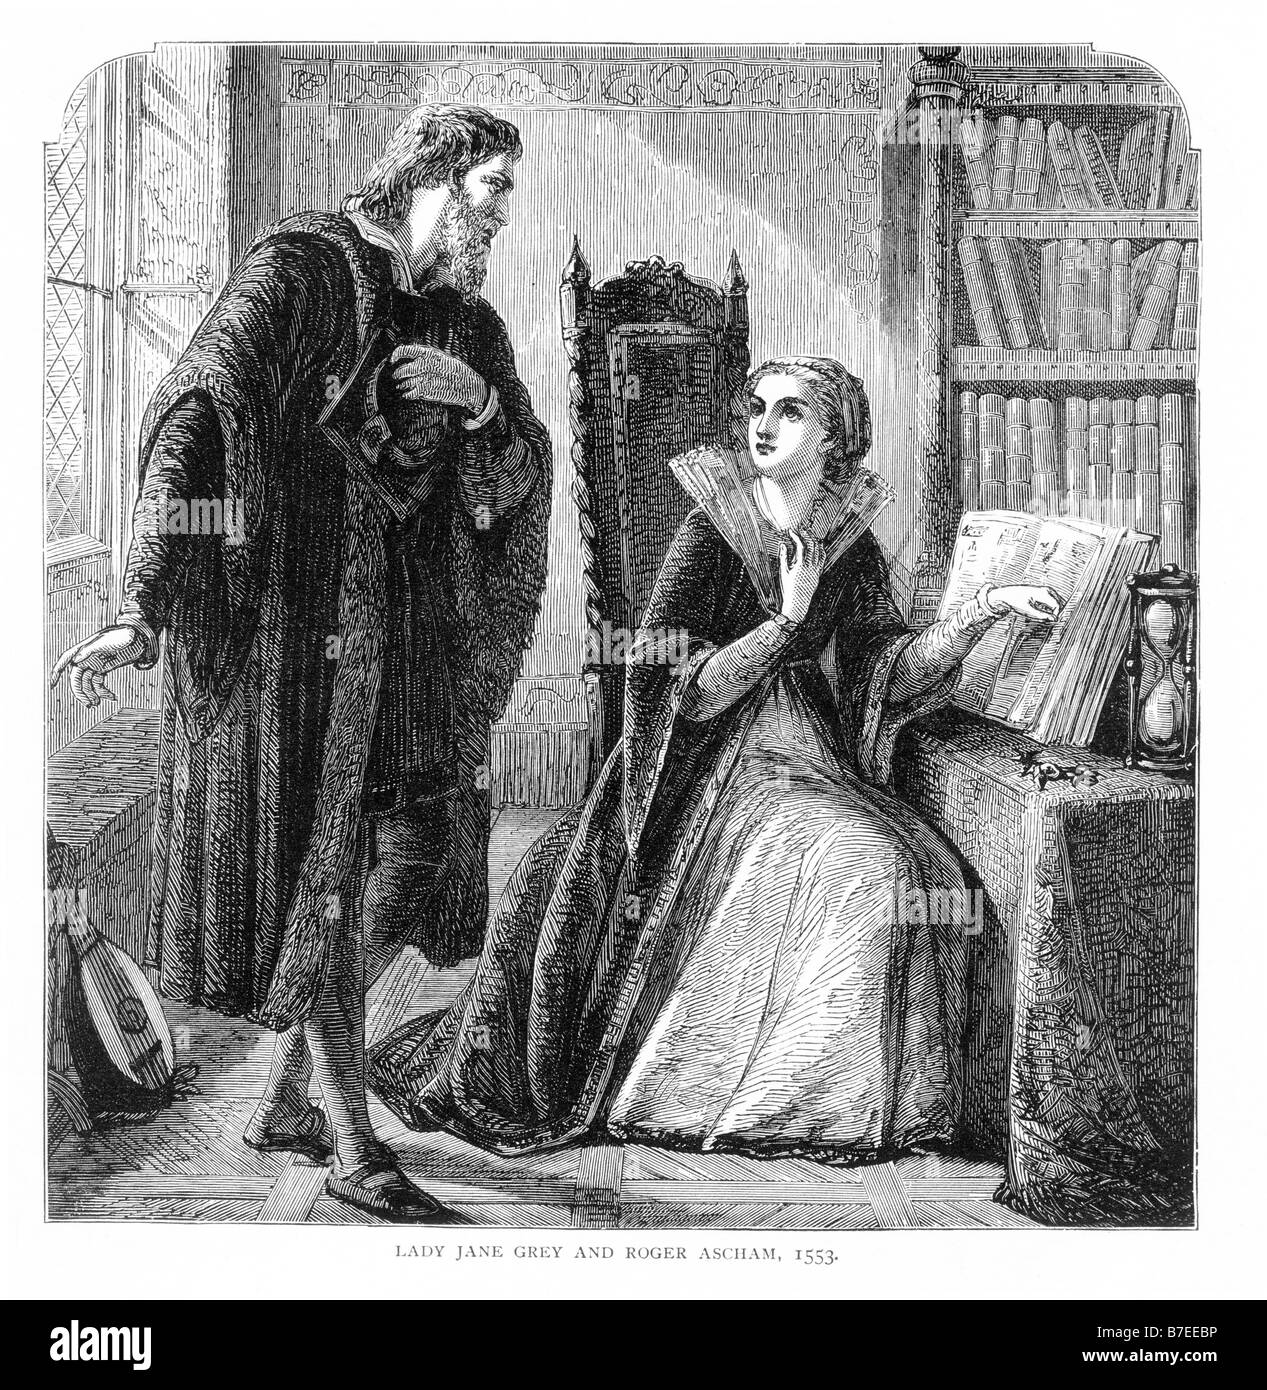 Roger Ascham matin appel à Lady Jane Grey qui a lu Platon, Phédon 1553 19ème siècle Illustration Banque D'Images